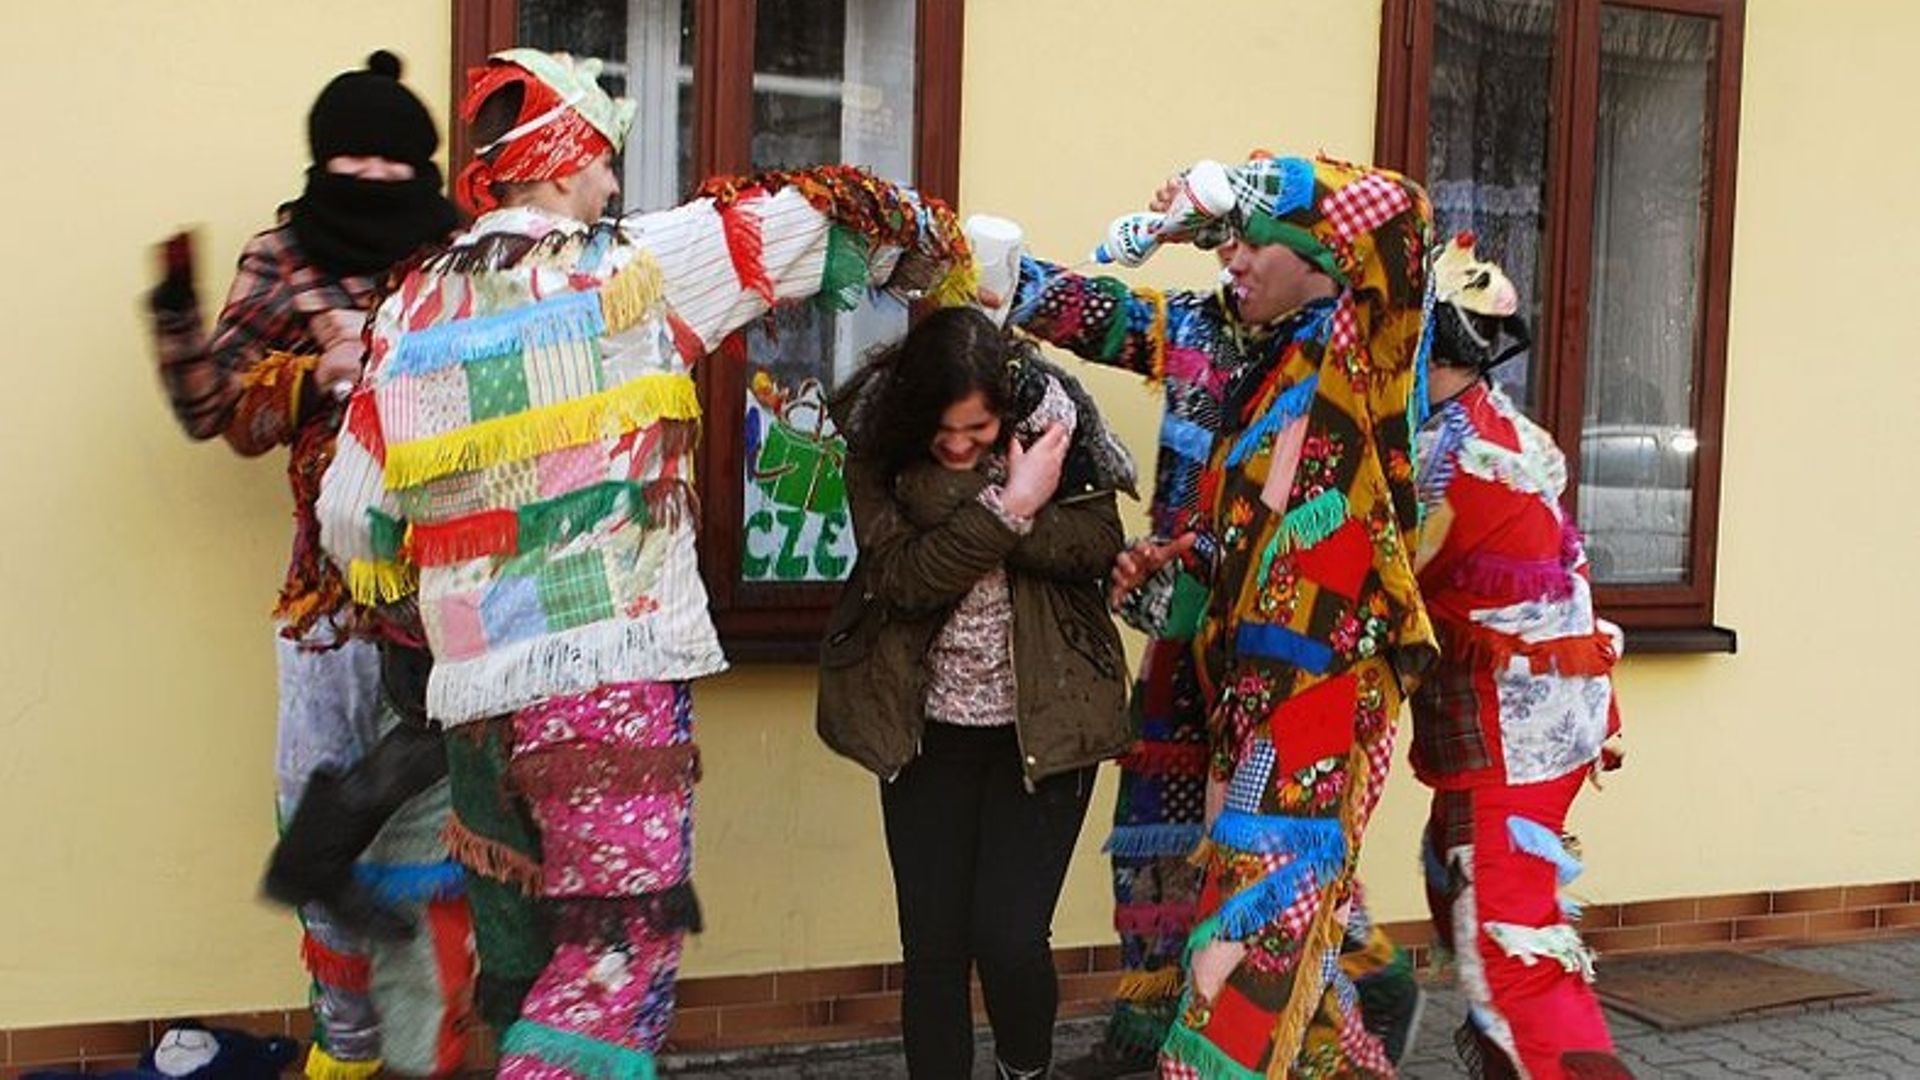 Le "Smingus Dingus" en Pologne, ou la tradition d'arroser les filles à Pâques